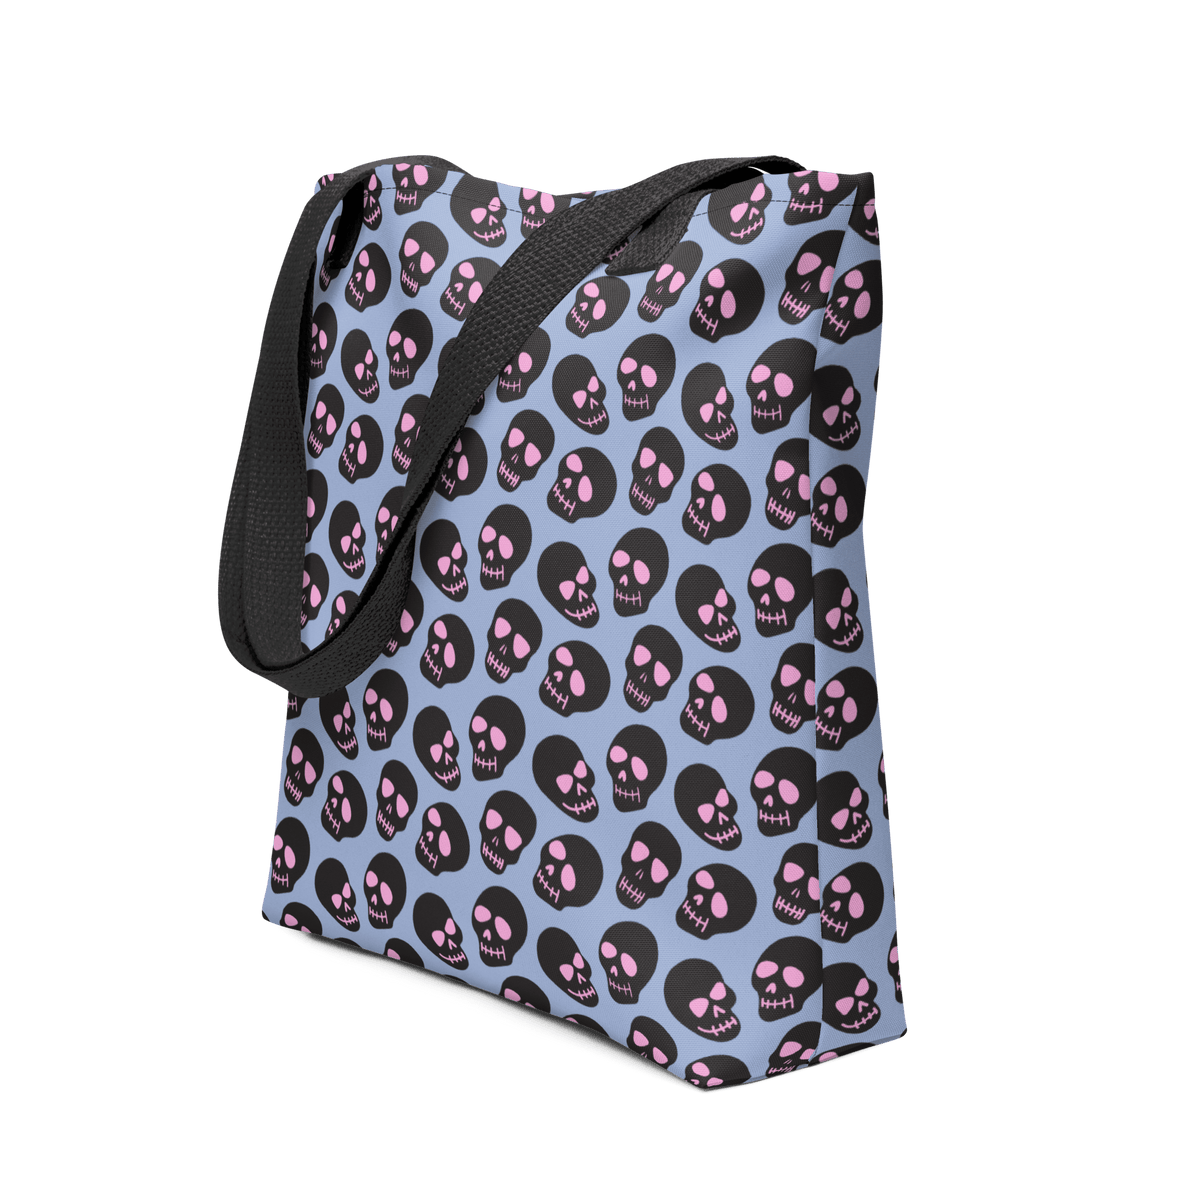 Neon Skull Tote bag - Goth Cloth Co.6166149_4533